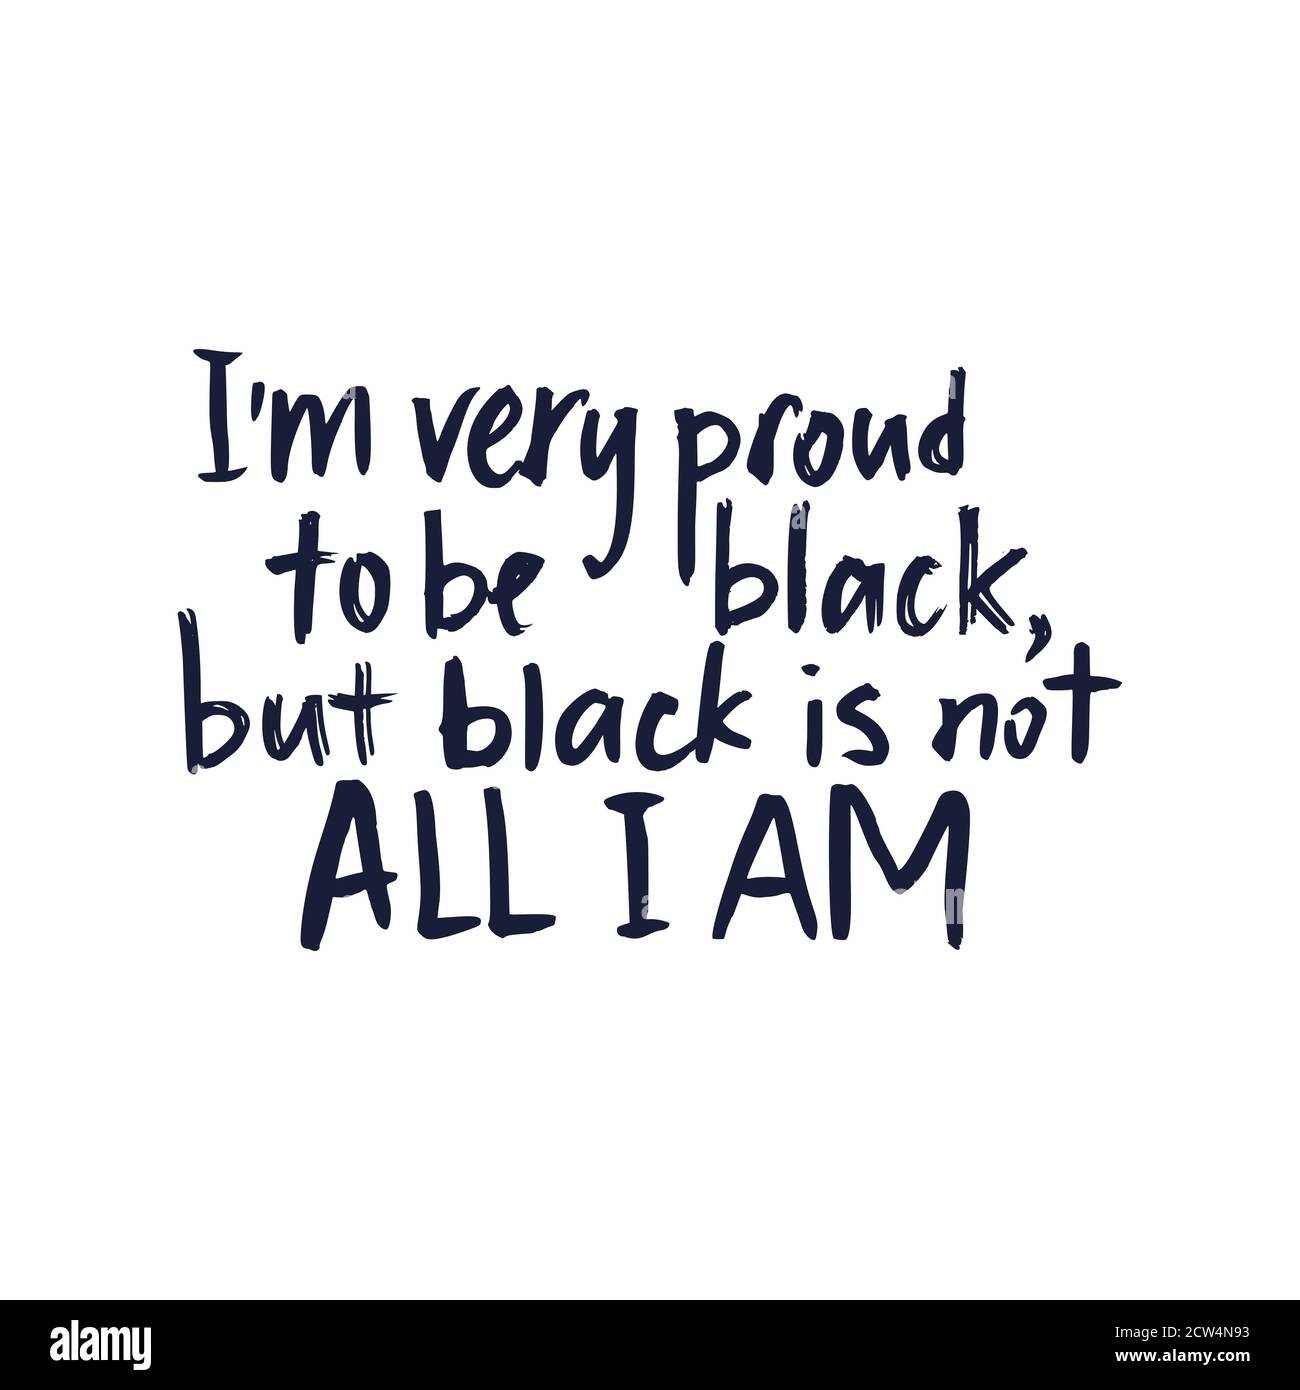 Je suis très fier d'être noir. Les vies noires comptent. Affiche à motif lettrage vectoriel. Citation texturée dessinée à la main. Illustration de Vecteur